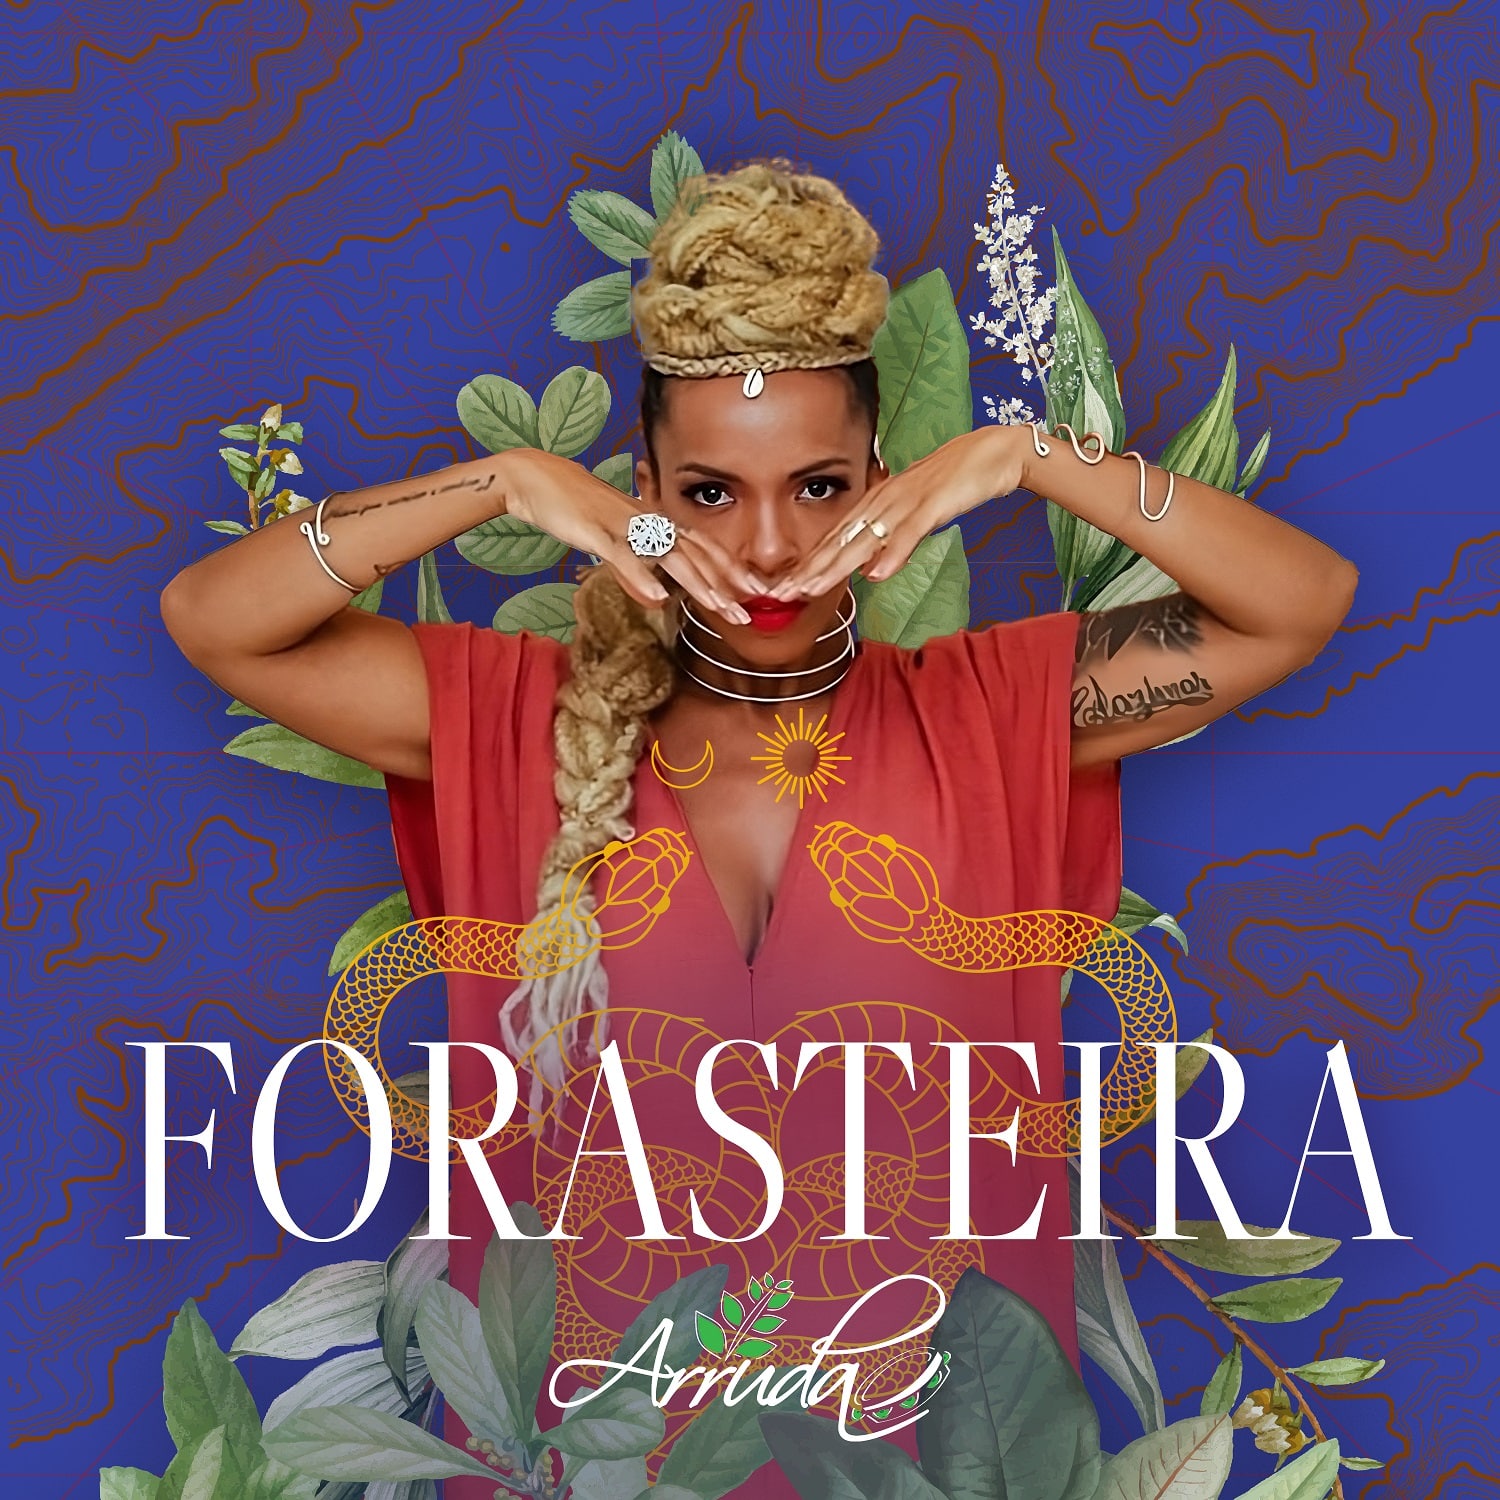 revistaprosaversoearte.com - Grupo Arruda se inspira na força das mulheres no samba 'Forasteira'